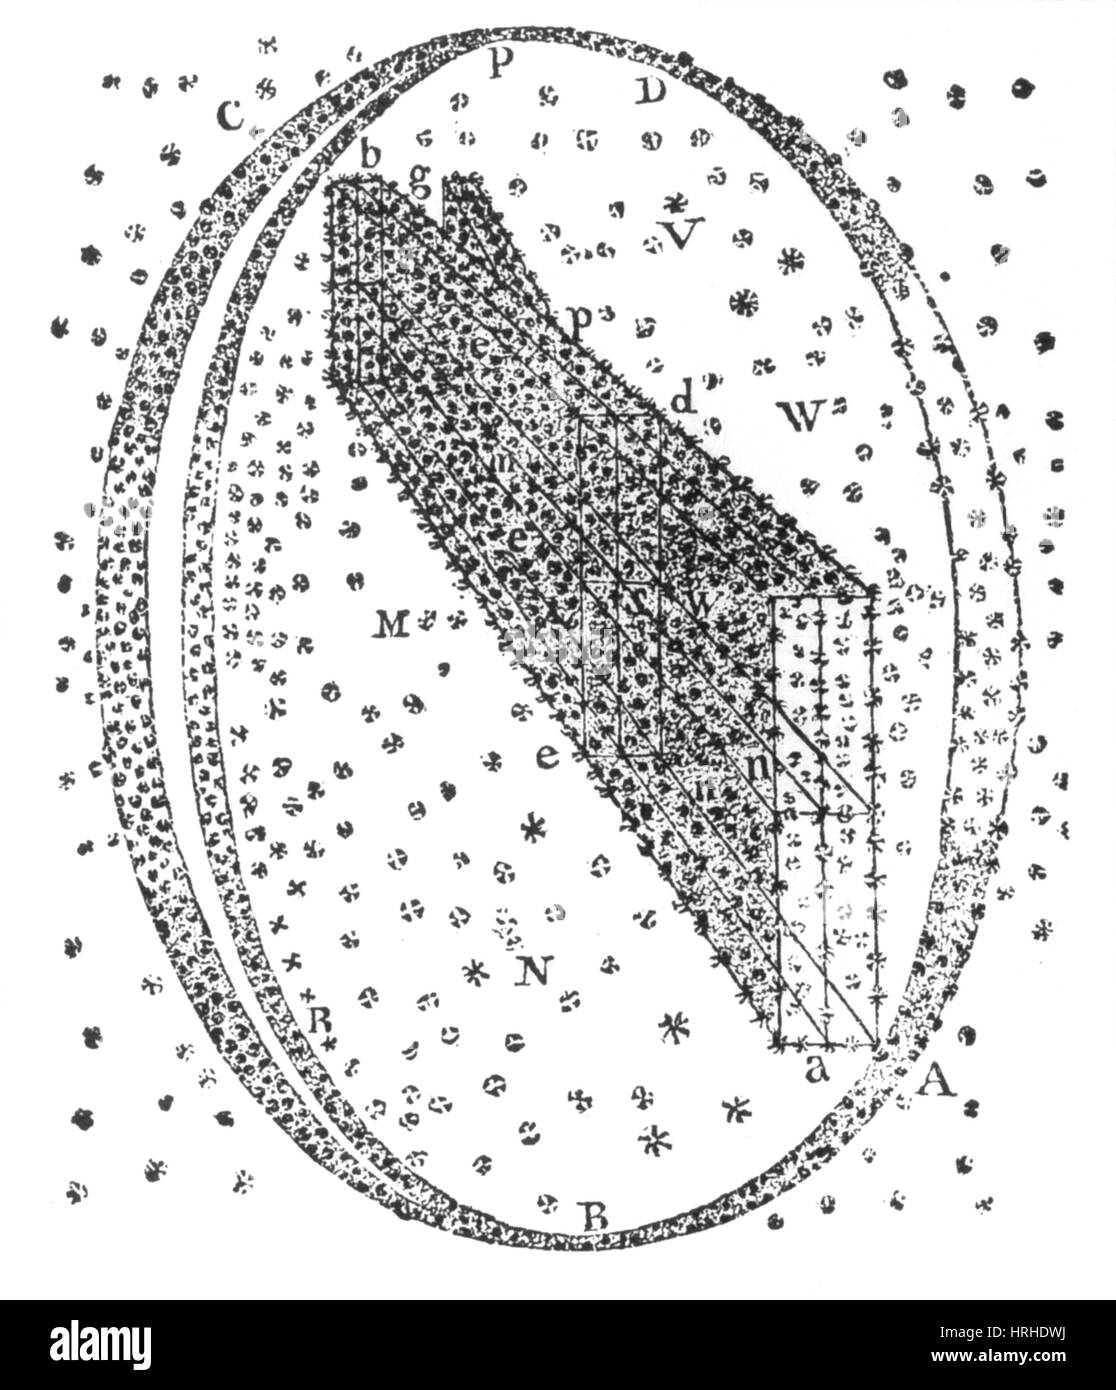 Galactic Model, Herschel, 1784 Stock Photo